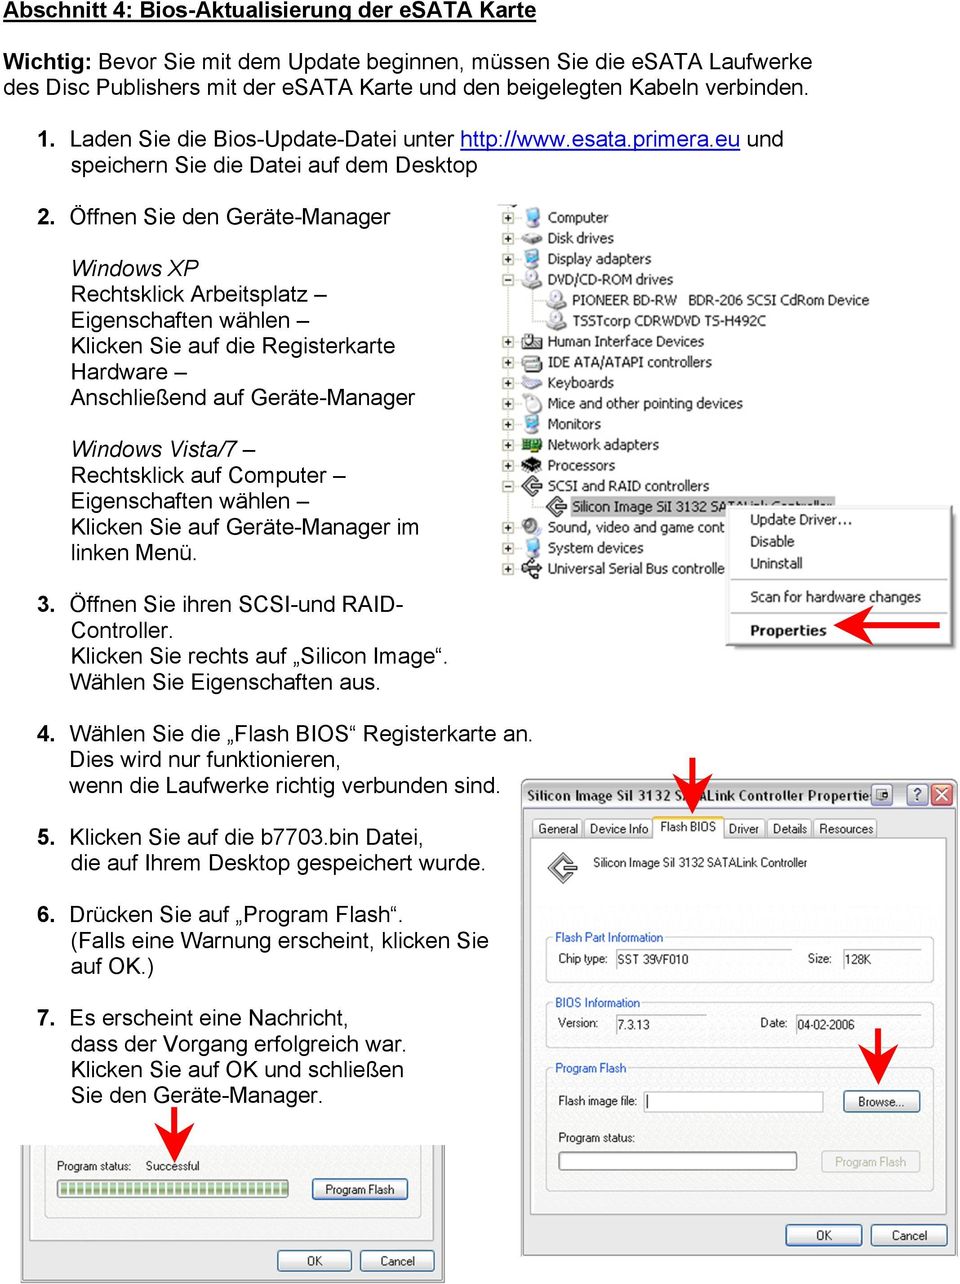 Öffnen Sie den Geräte-Manager Windows XP Rechtsklick Arbeitsplatz Eigenschaften wählen Klicken Sie auf die Registerkarte Hardware Anschließend auf Geräte-Manager Windows Vista/7 Rechtsklick auf